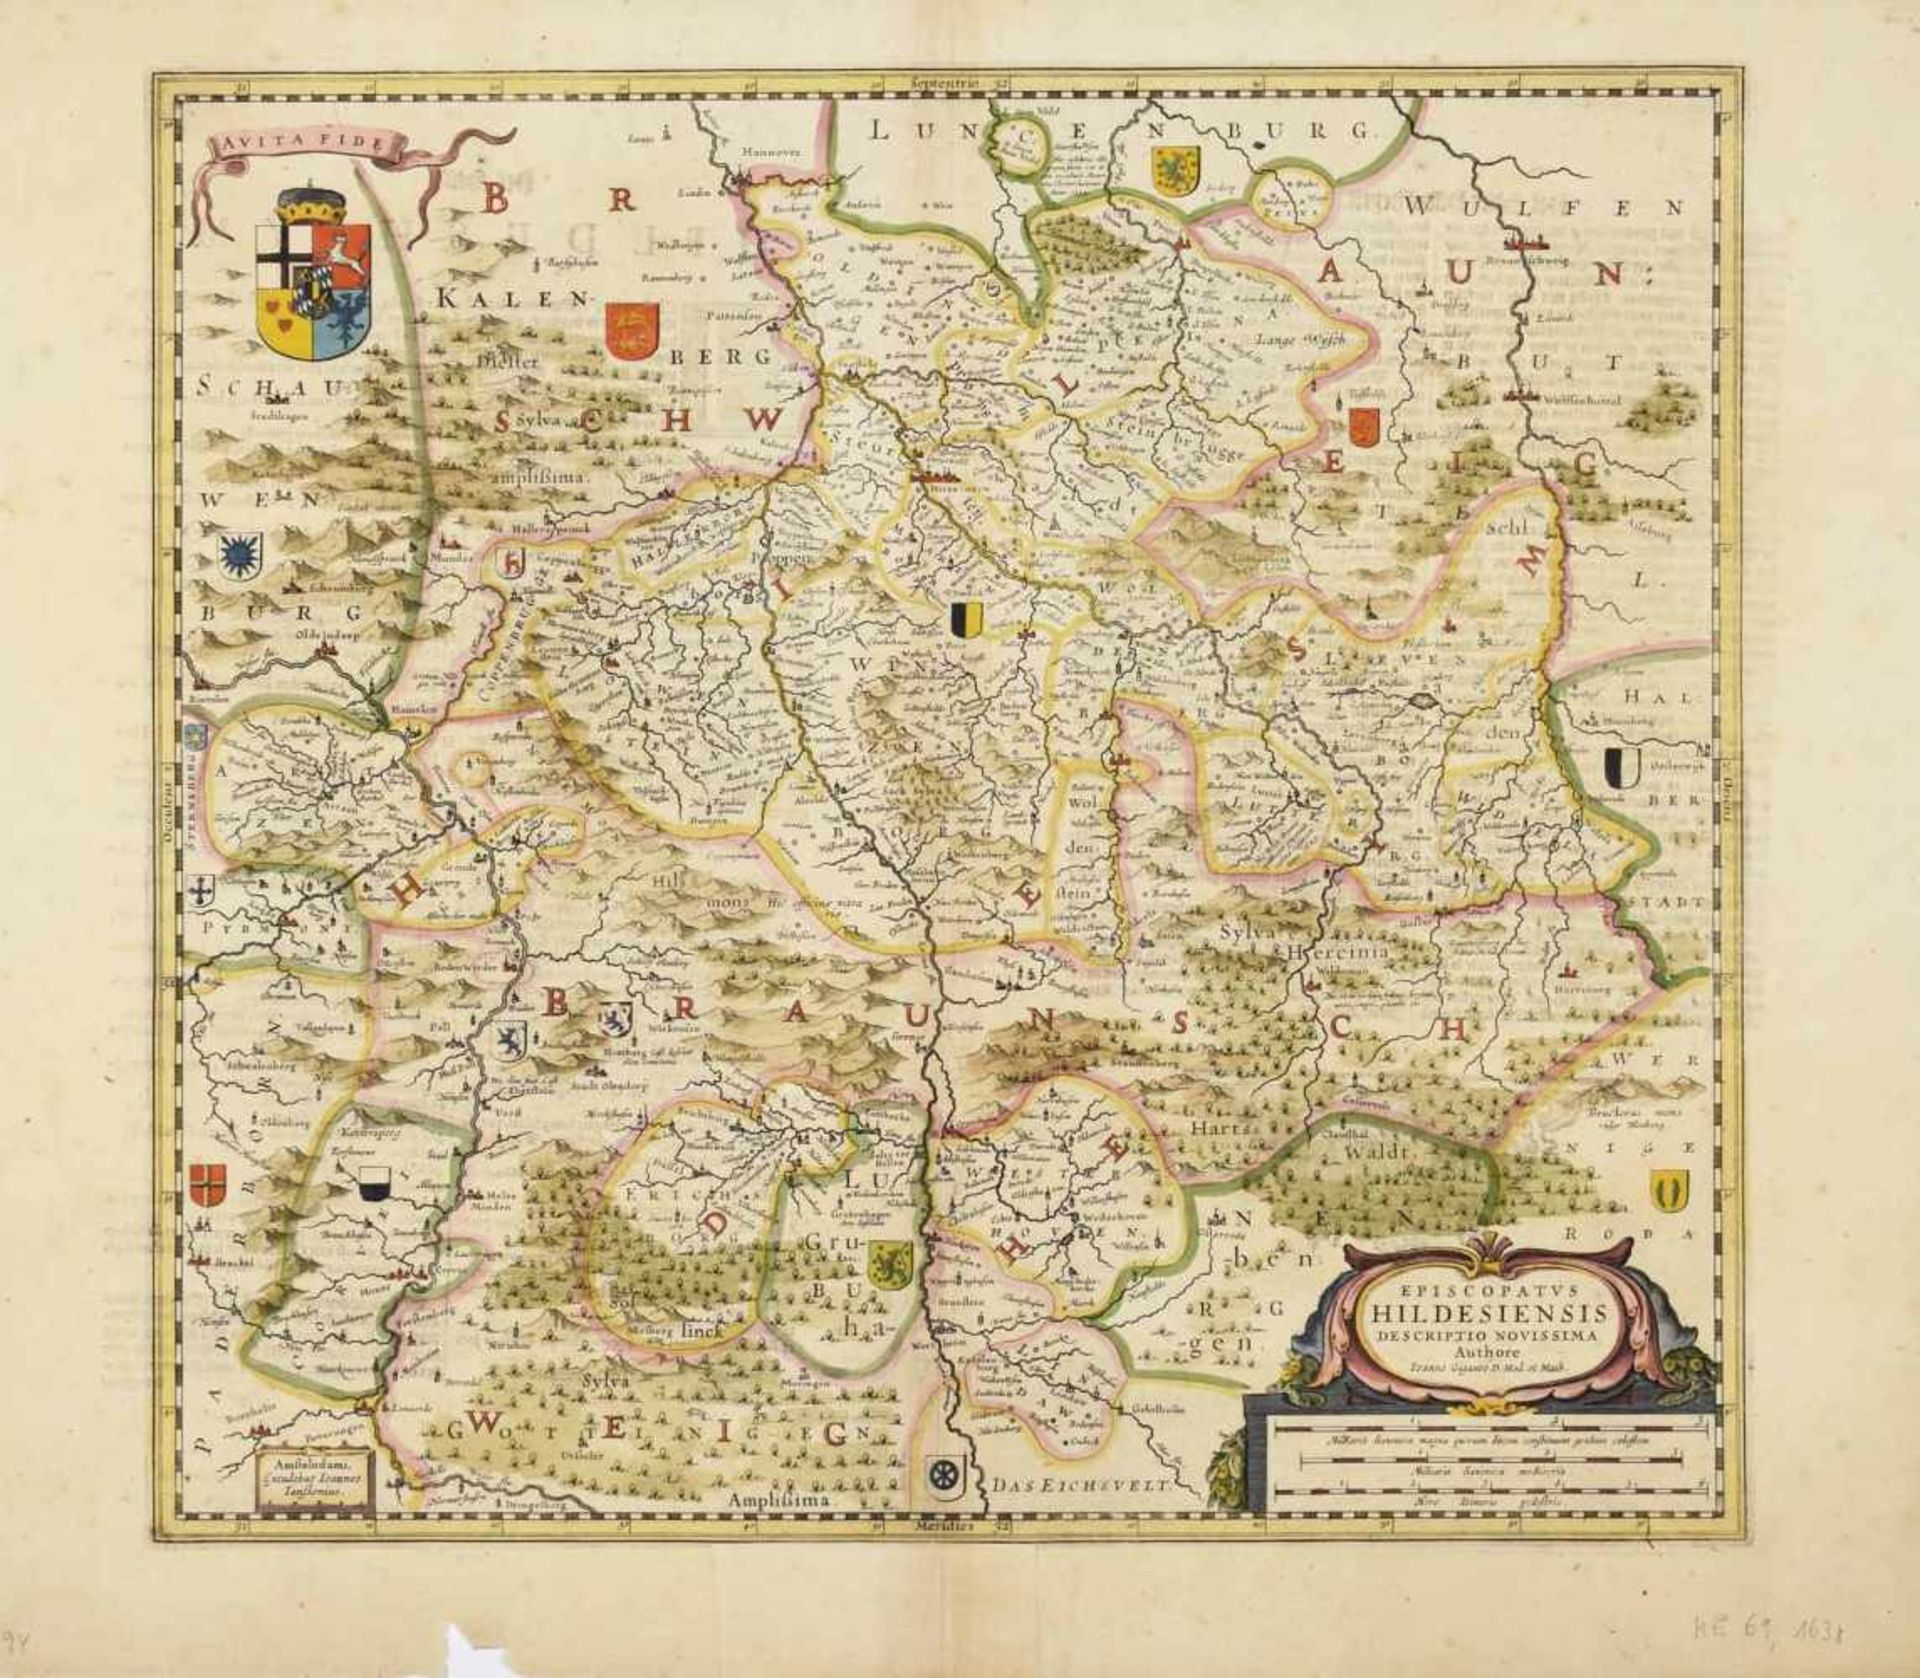 Karte Hildesheim Kupferstich, teilkoloriert, "Episcopatus Hildesiensis descriptio novissima", in - Bild 2 aus 2